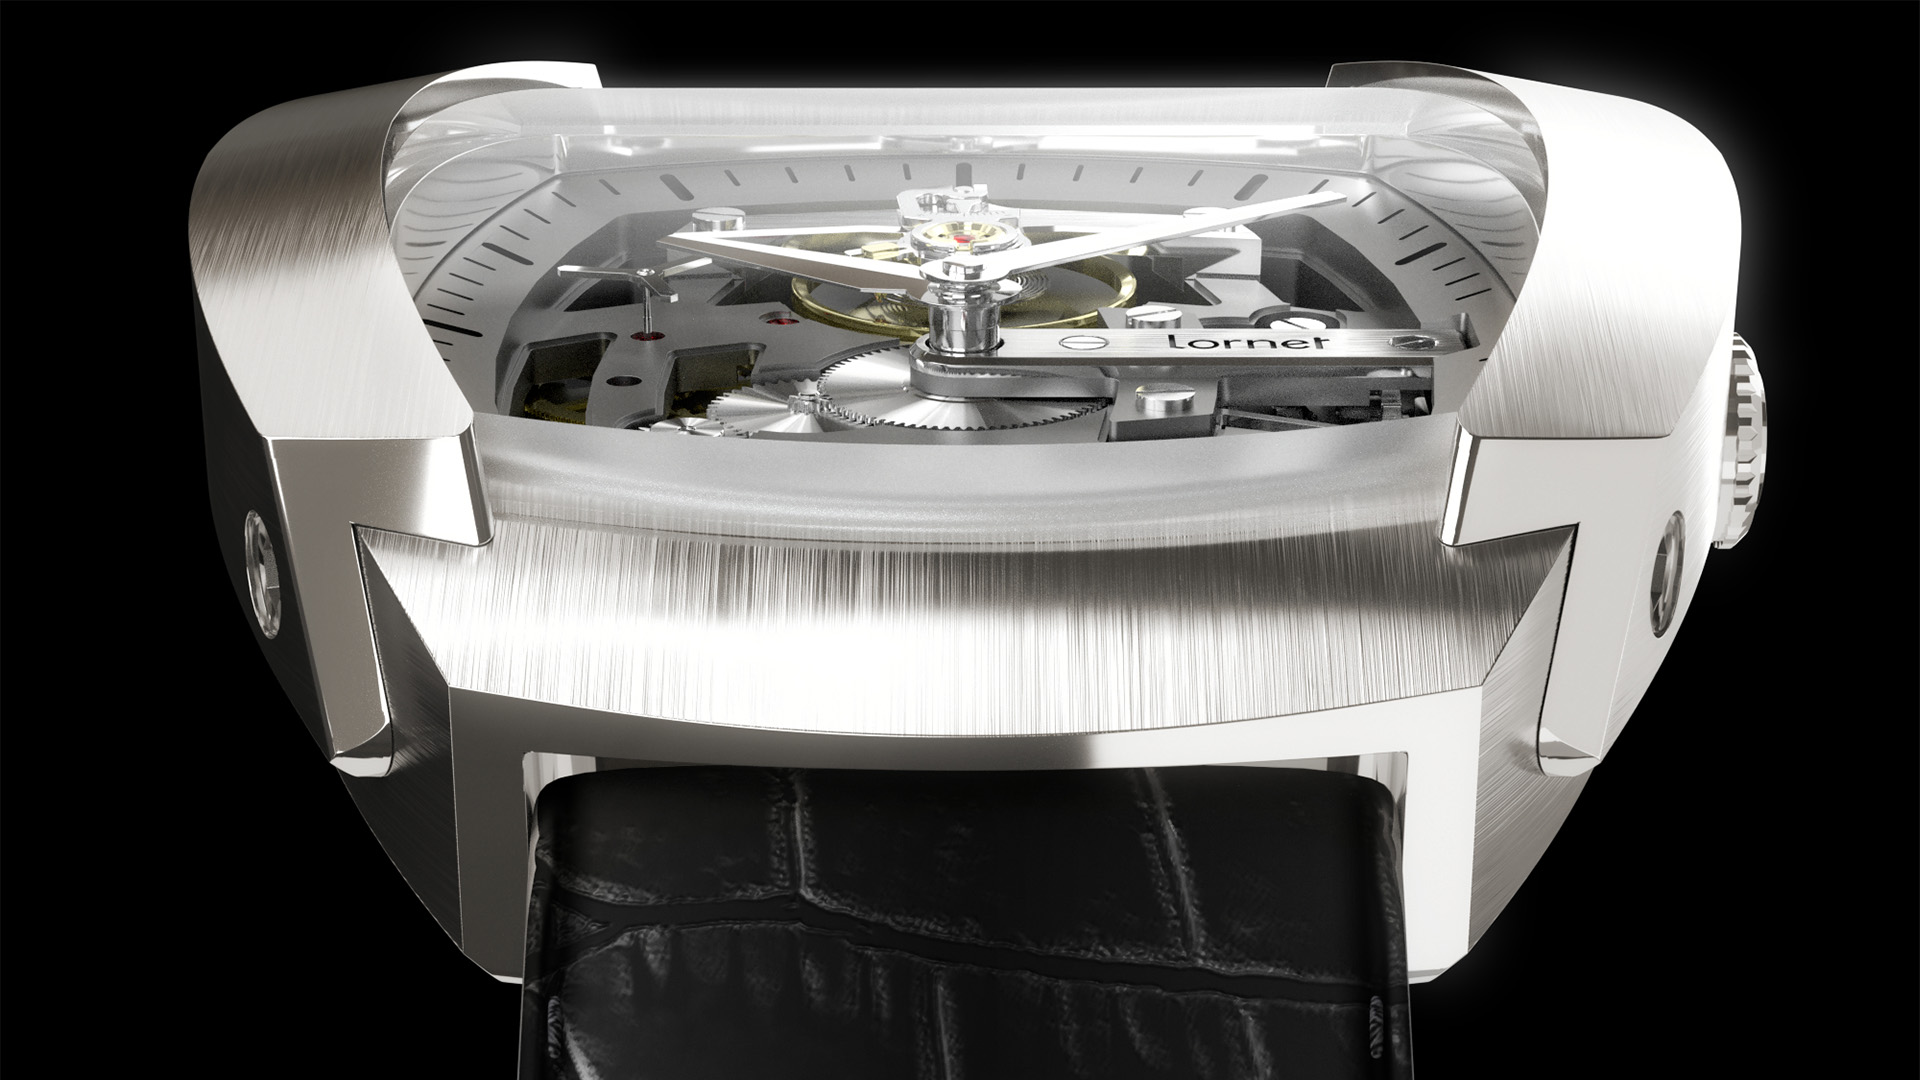 vue 3D en contre plongé d'une montre de haute horlogerie avec de noble matériaux aussi réaliste qu'une photo, marque Lornet